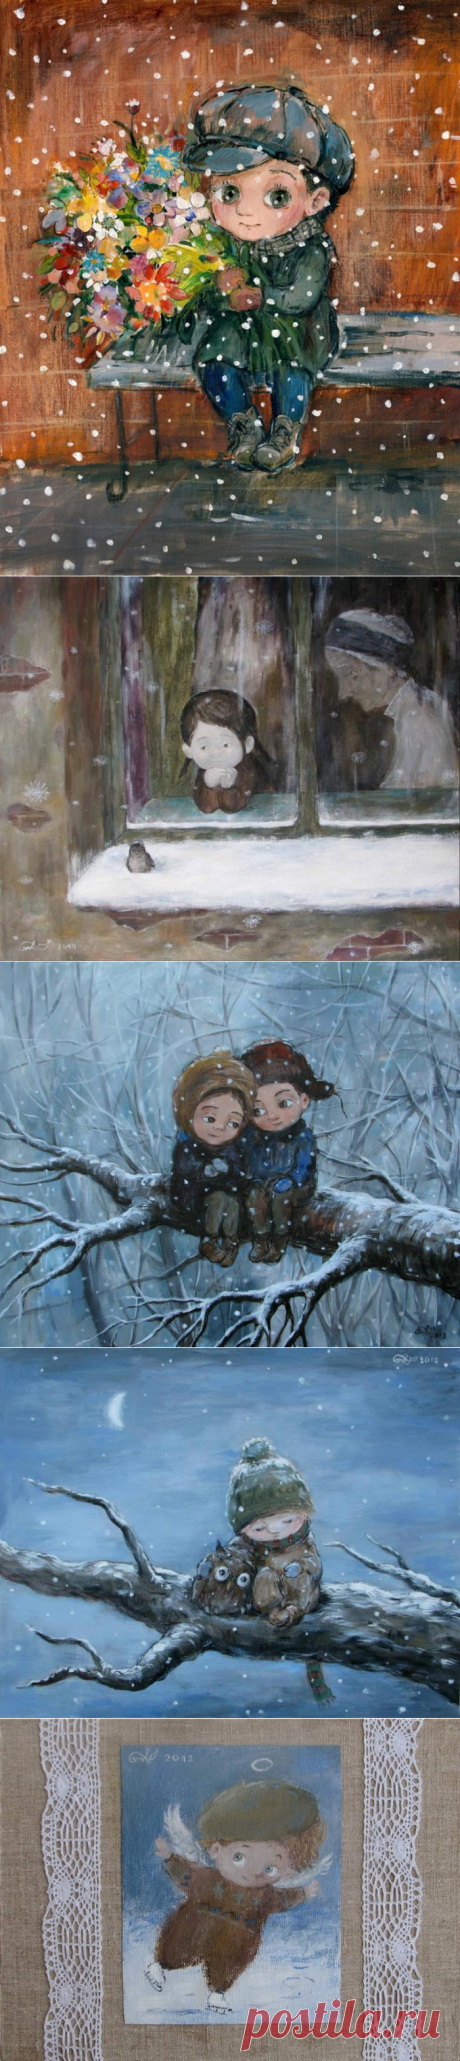 Сказочная зима в работах Нино Чакветадзе: 24 теплые и добрые картины - Ярмарка Мастеров - ручная работа, handmade